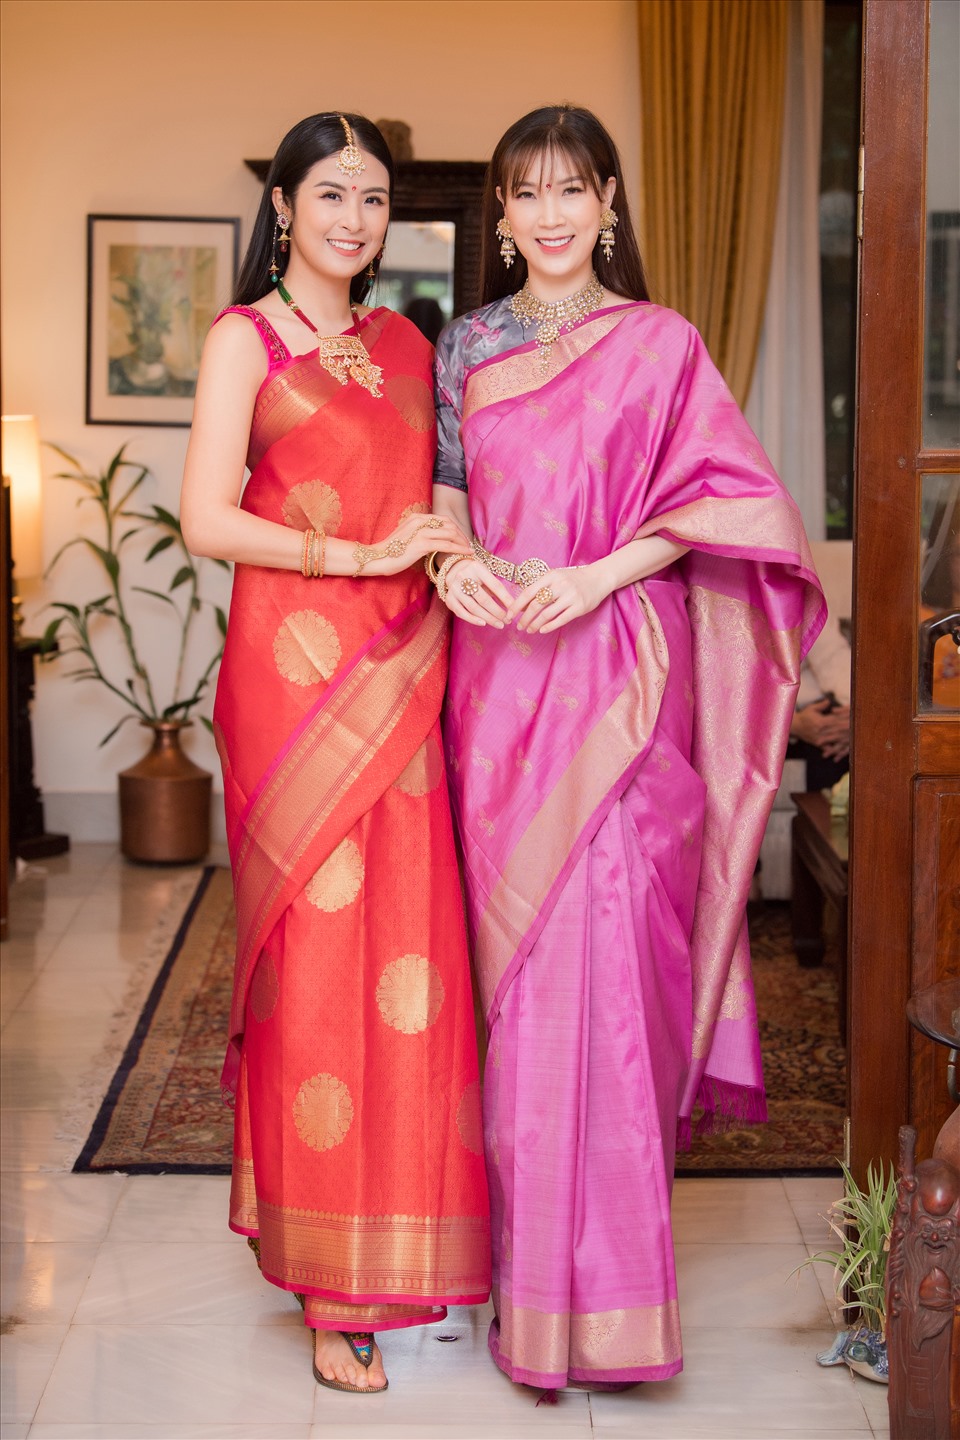 2 nàng Hoa hậu thích thú khi lần đầu được diện bộ trang phục Sari. Ảnh: Vũ Toàn